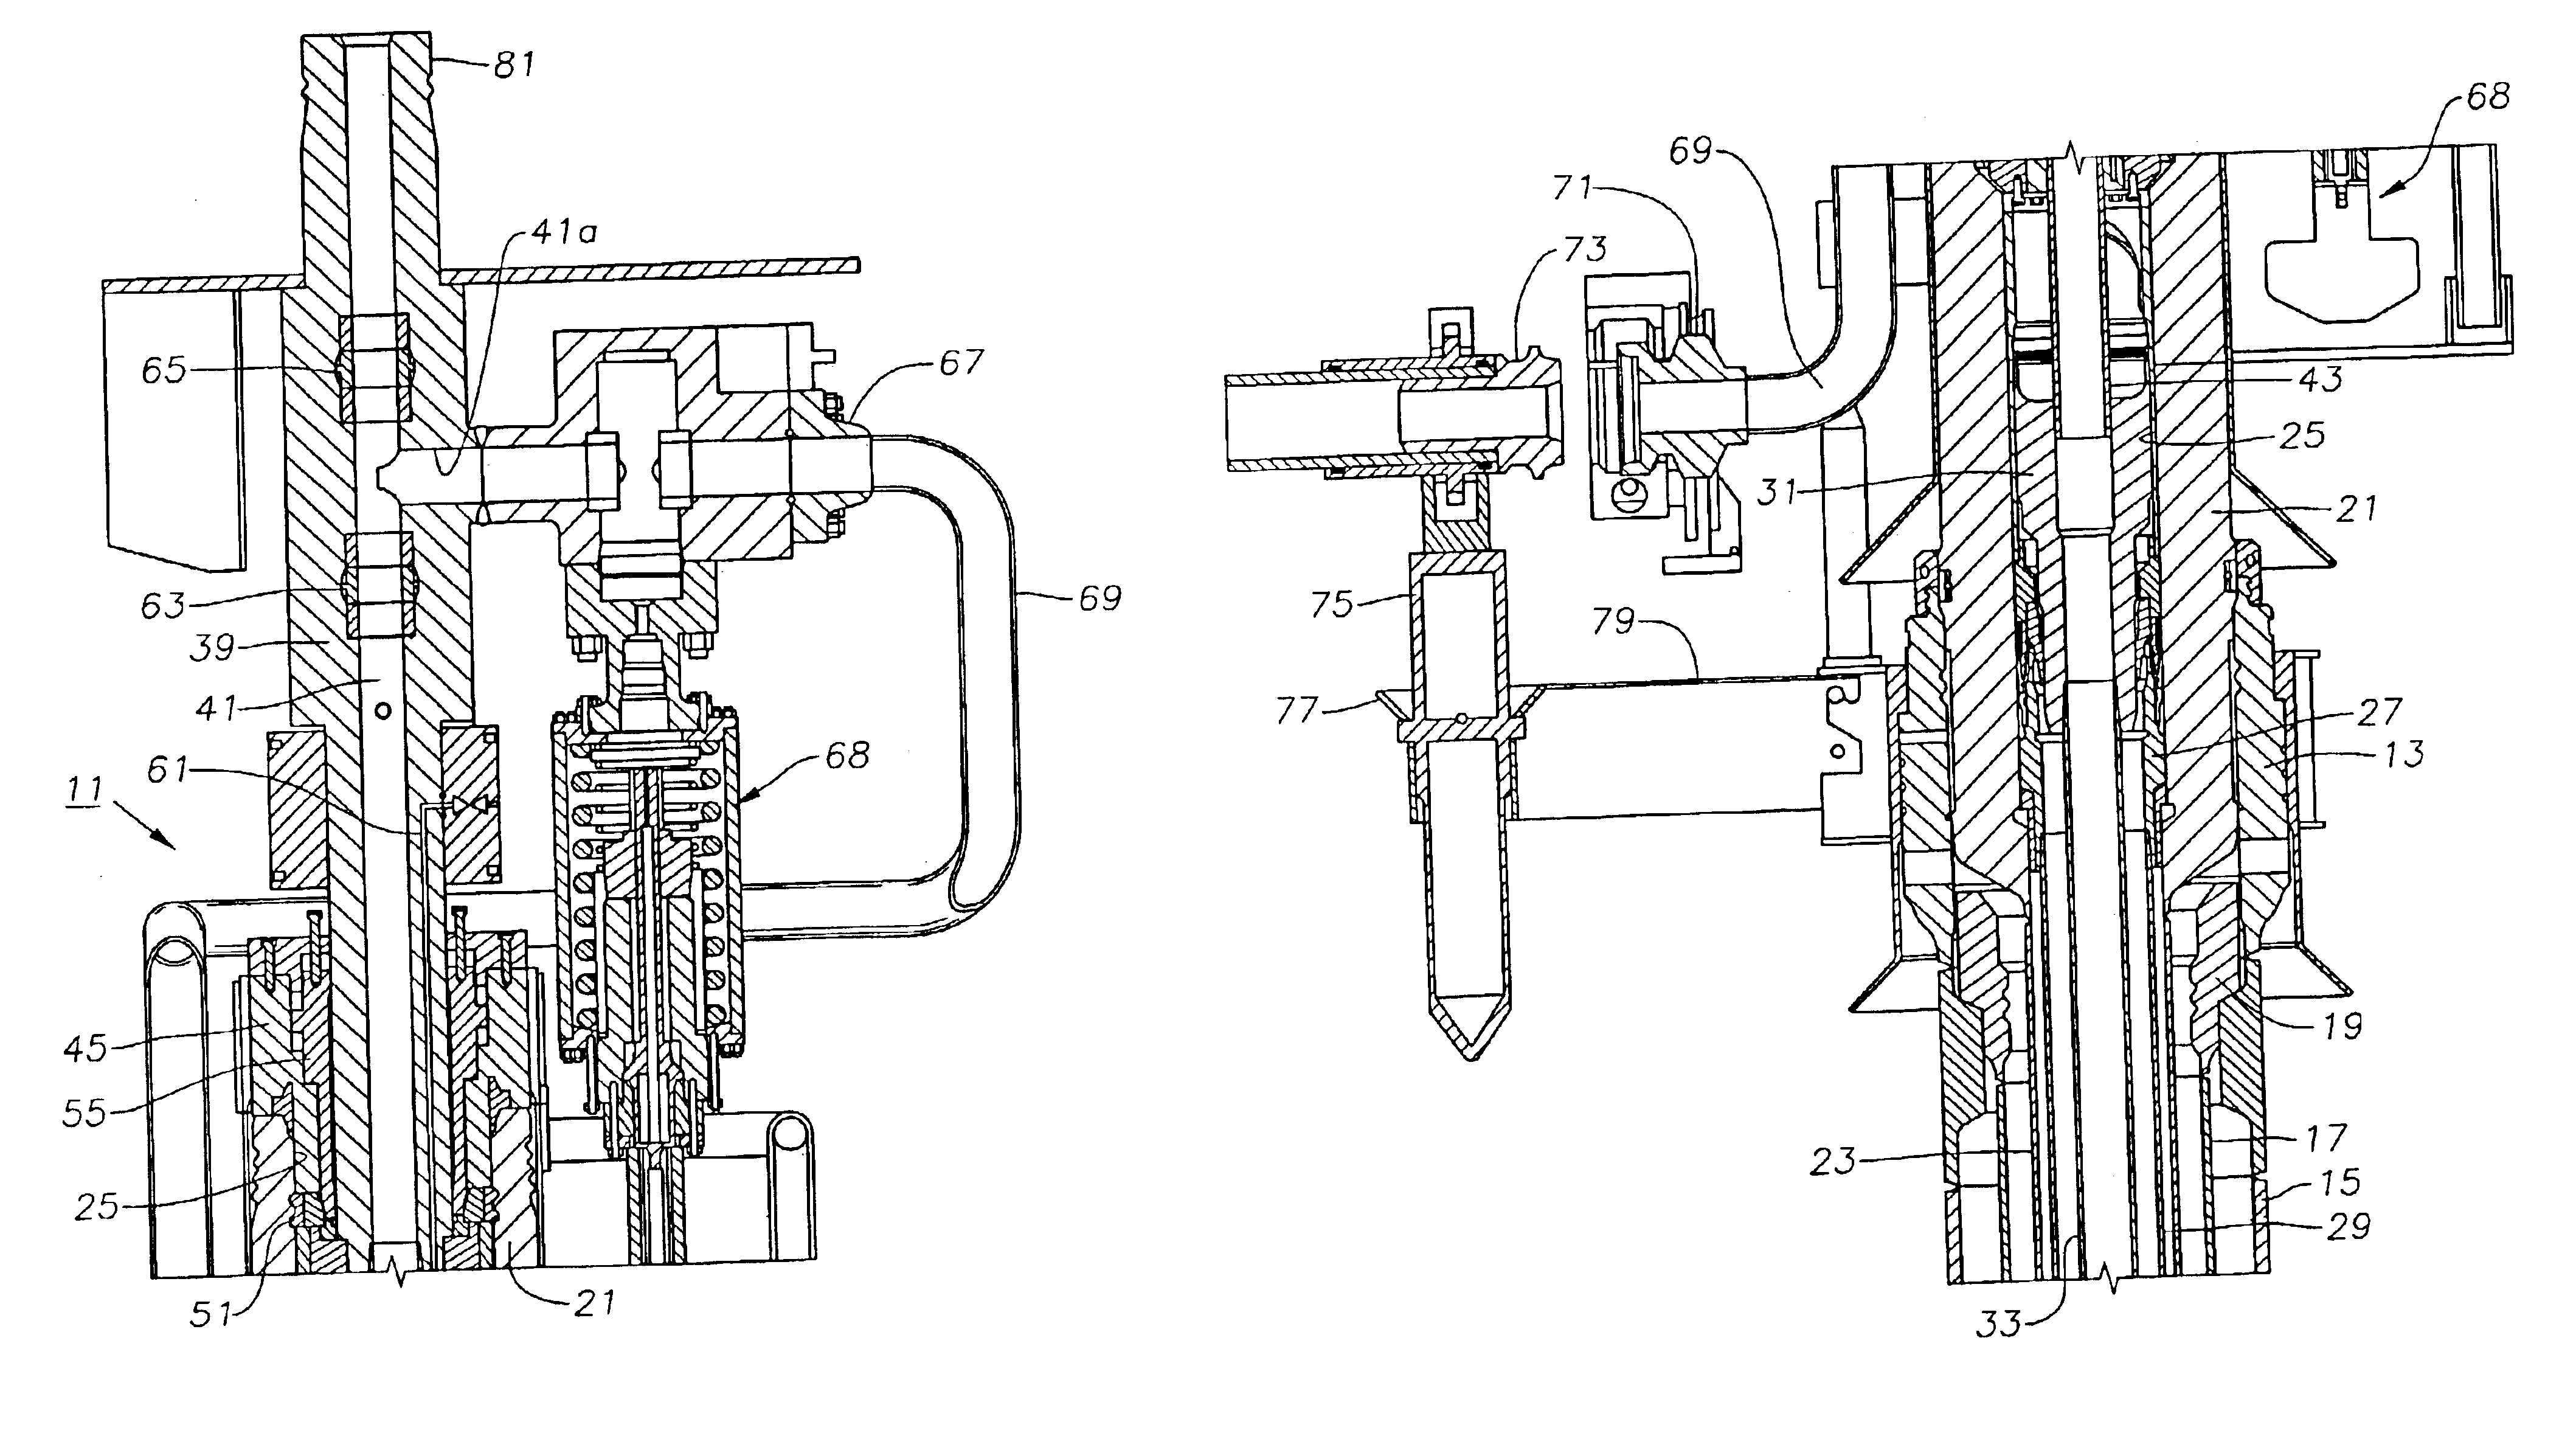 Tubing annulus valve